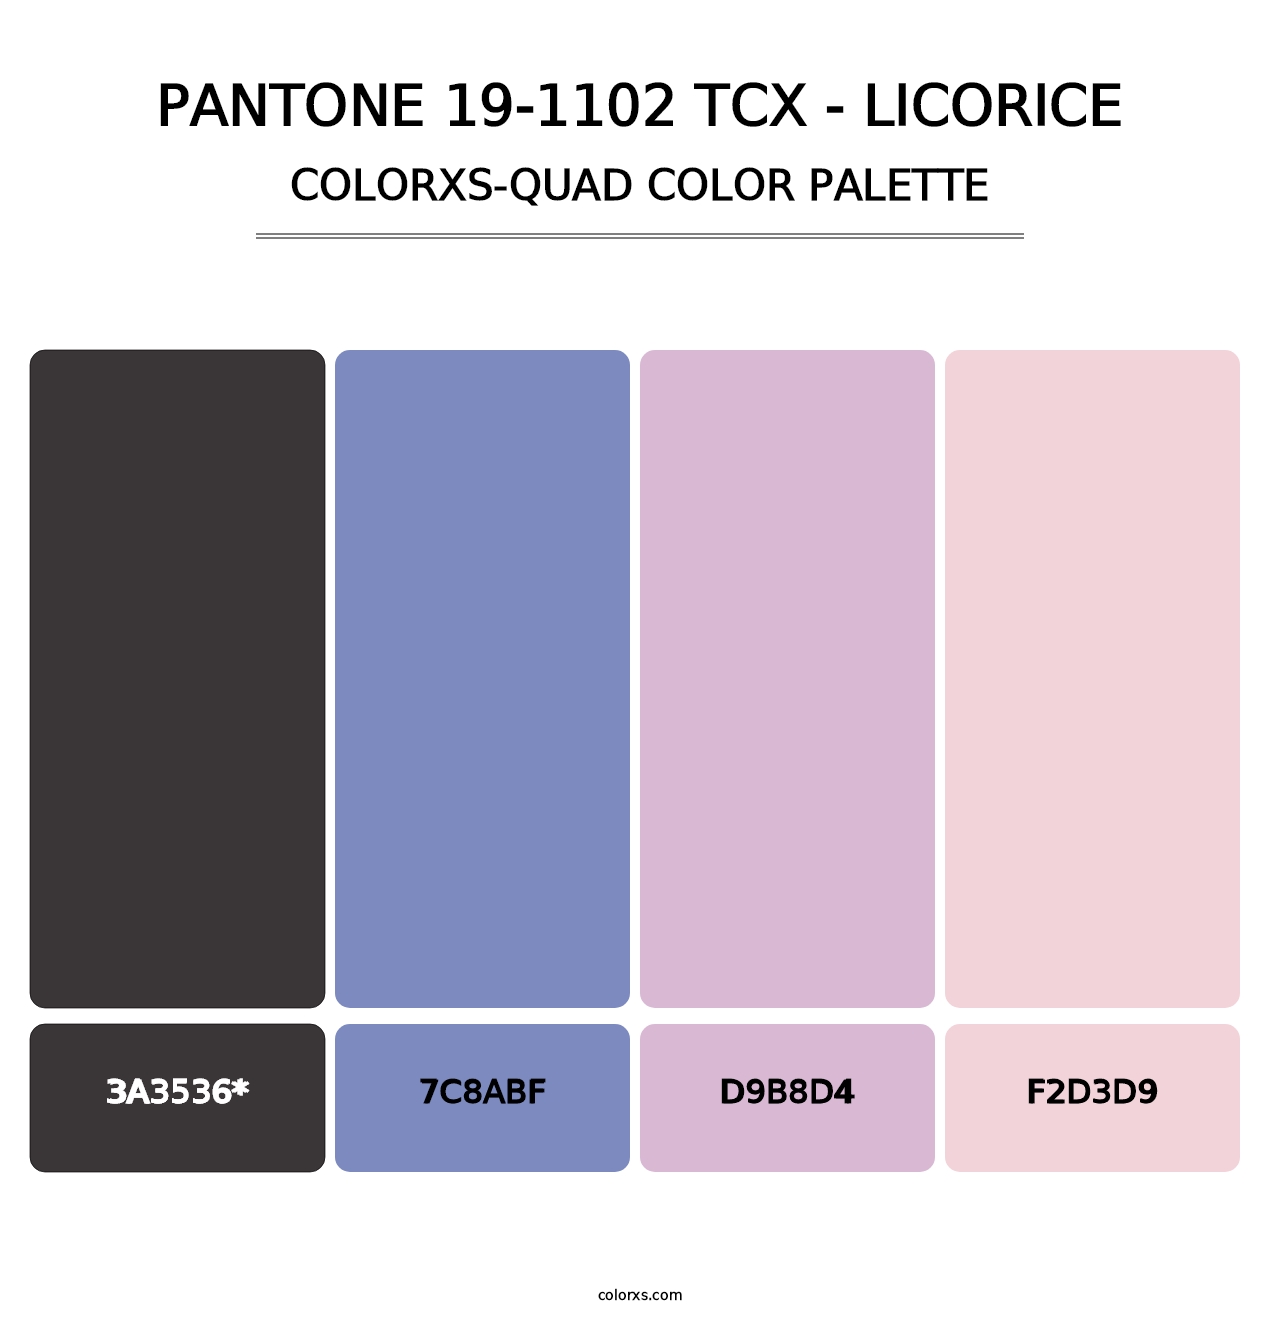 PANTONE 19-1102 TCX - Licorice - Colorxs Quad Palette